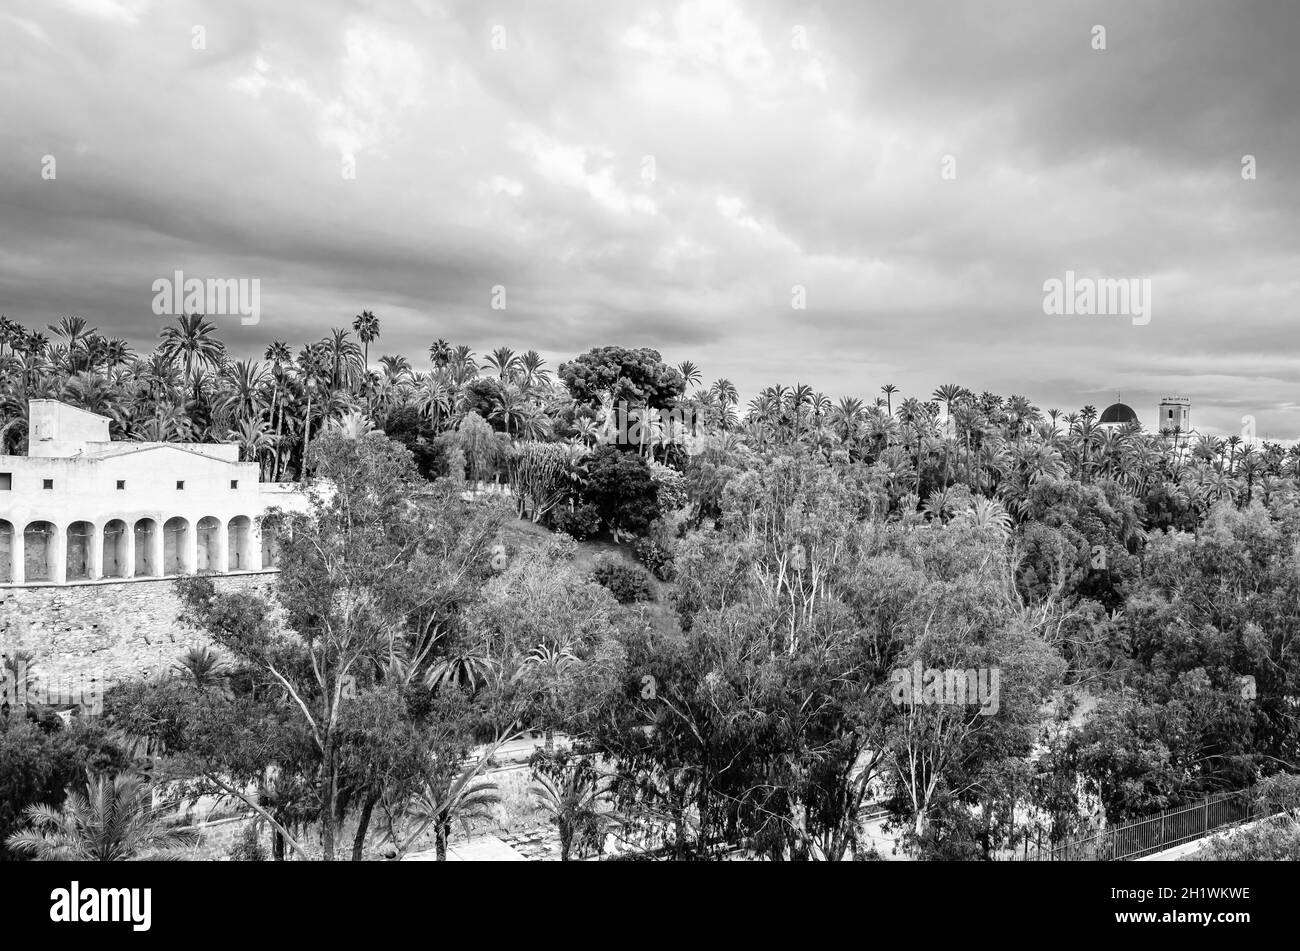 ELCHE, ESPAGNE - 29 DÉCEMBRE 2018 : vue sur la palmeraie et la rivière Vinalopo dans la ville d'Elche, province d'Alicante, Espagne Banque D'Images